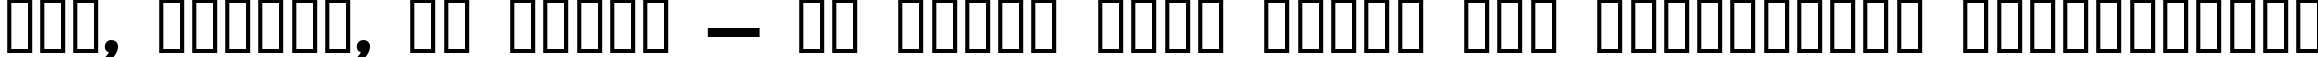 Пример написания шрифтом Bold текста на украинском